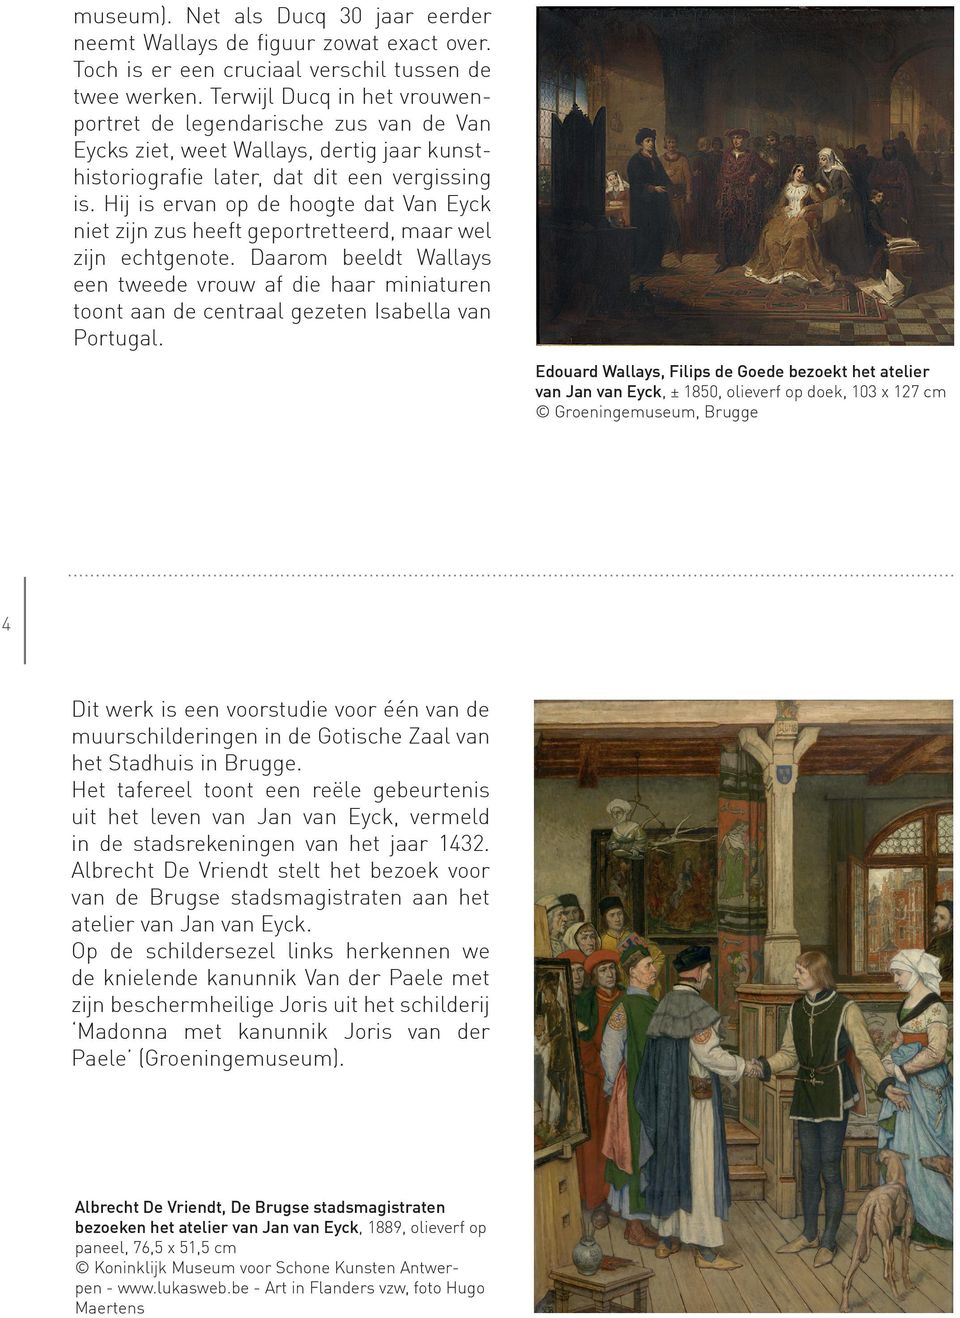 Hij is ervan op de hoogte dat Van Eyck niet zijn zus heeft geportretteerd, maar wel zijn echtgenote.